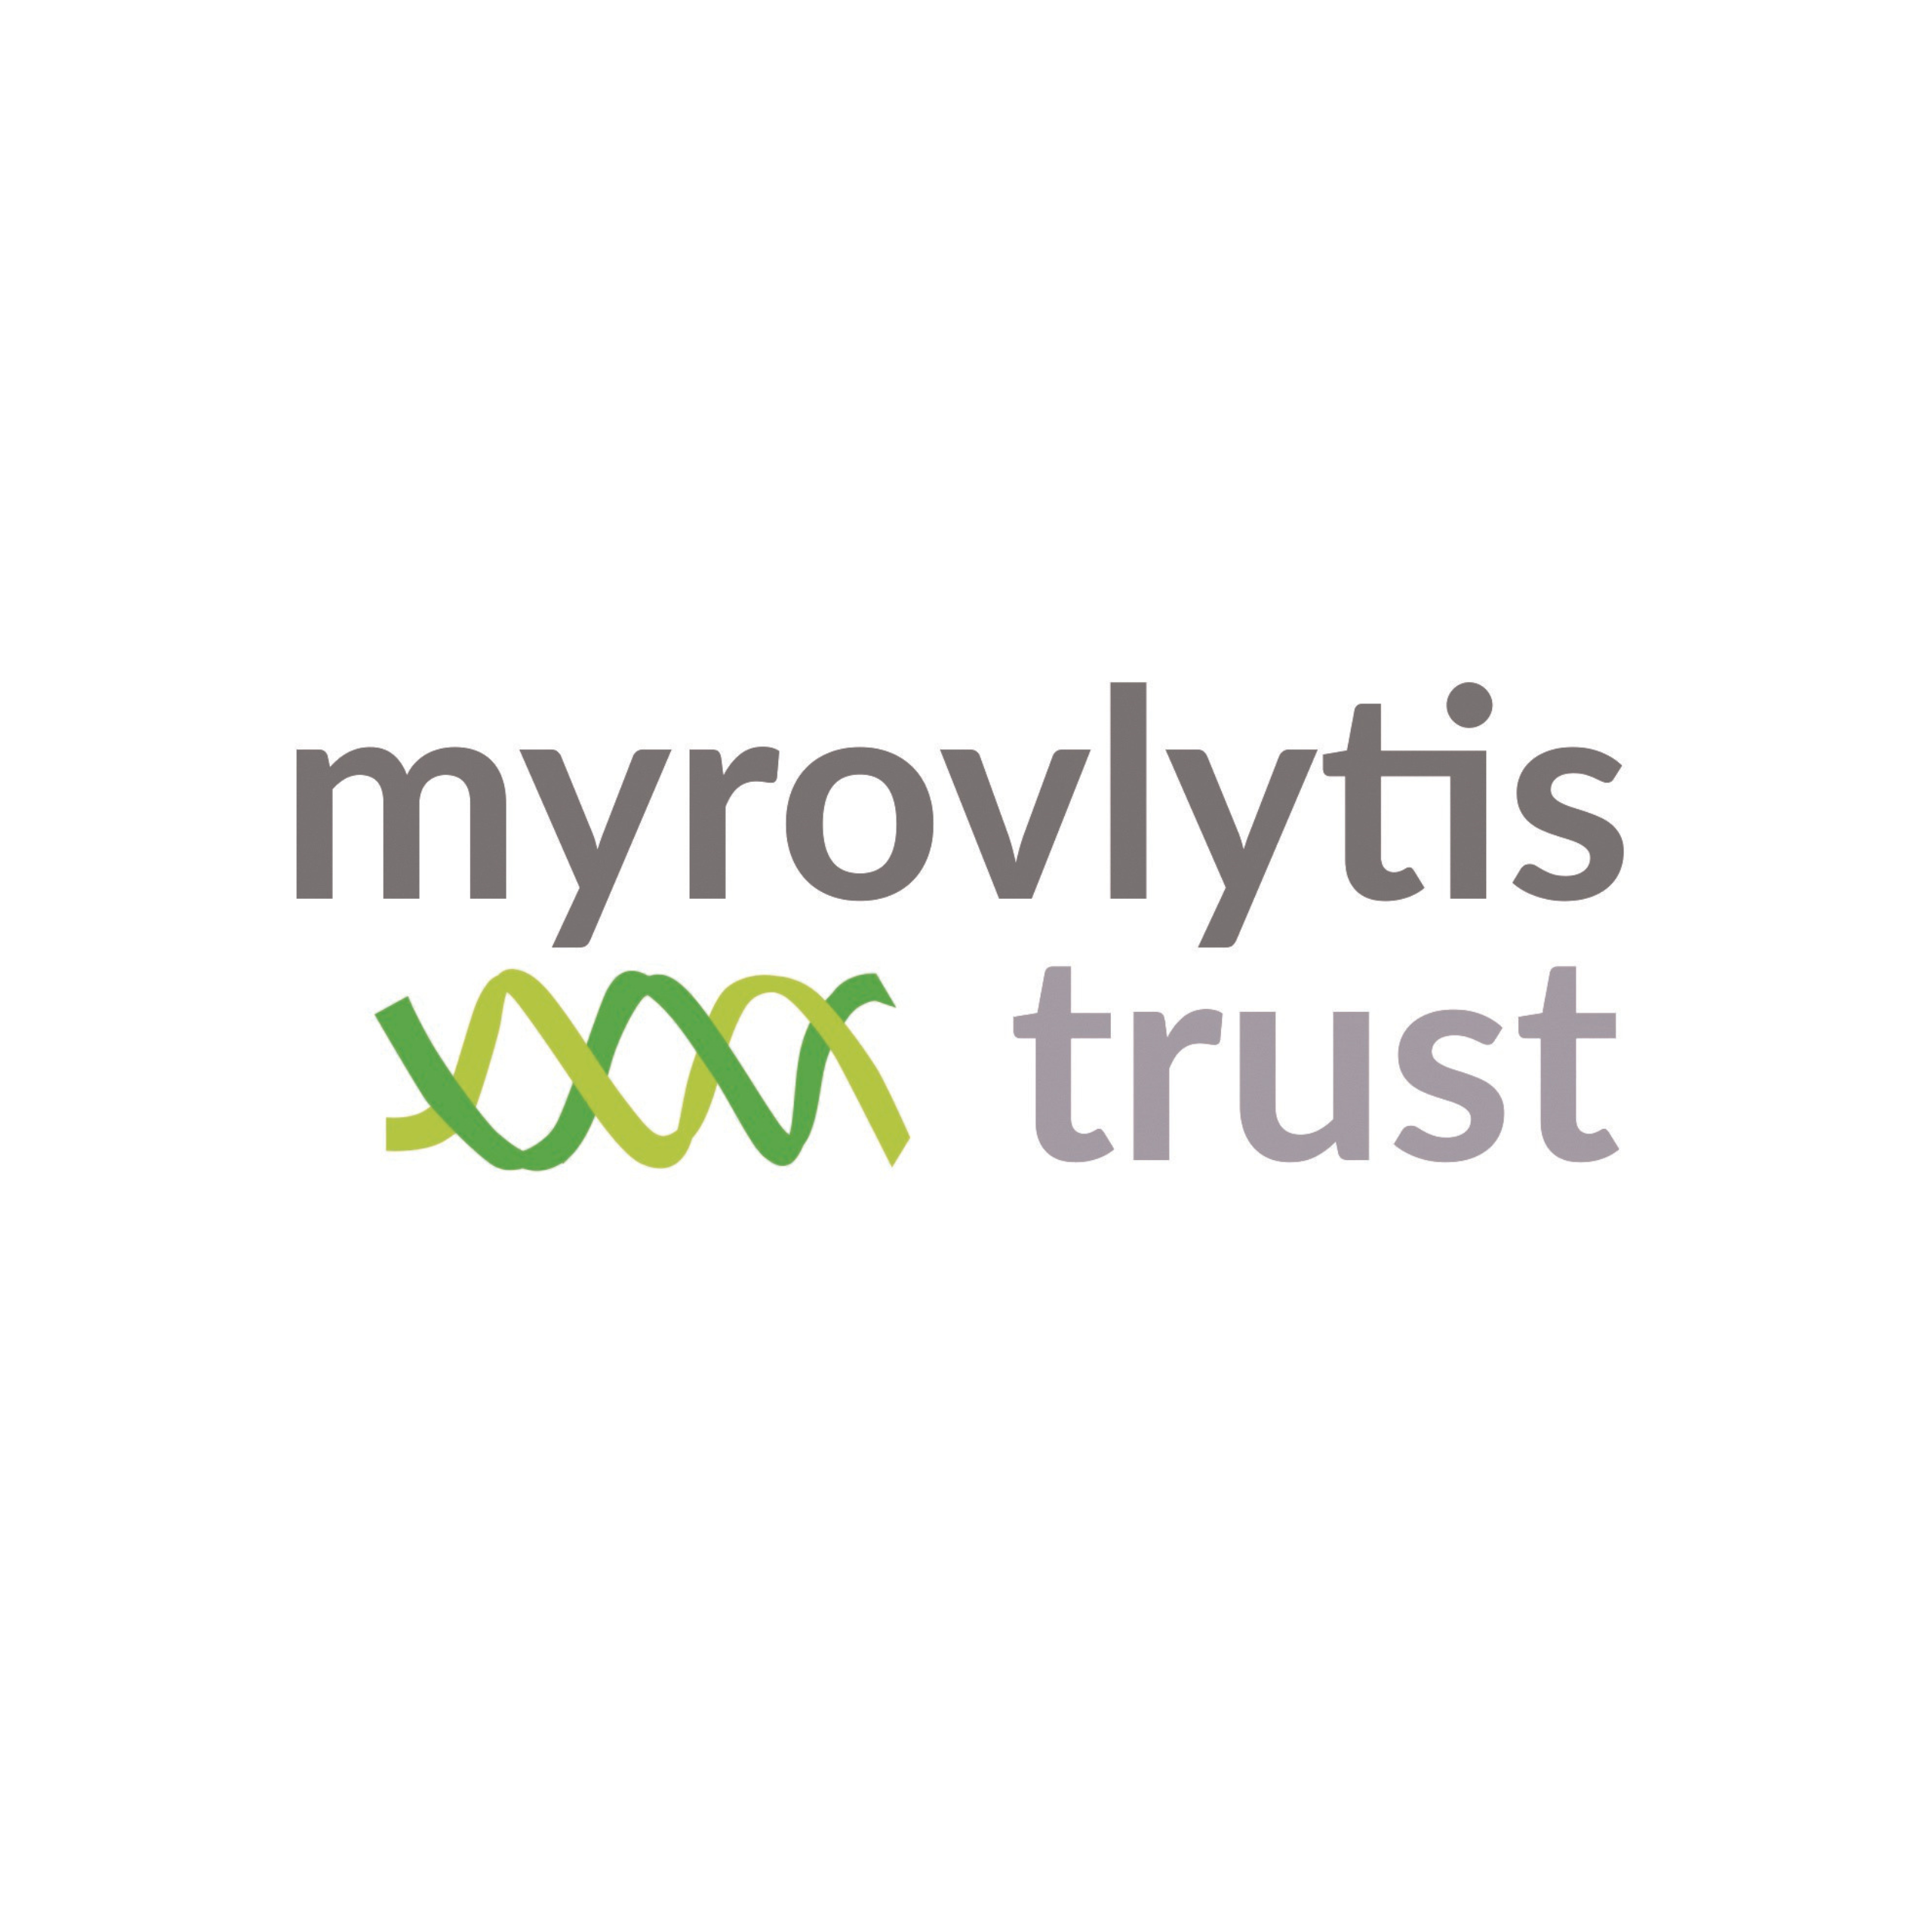 Myrovlytis trust logo